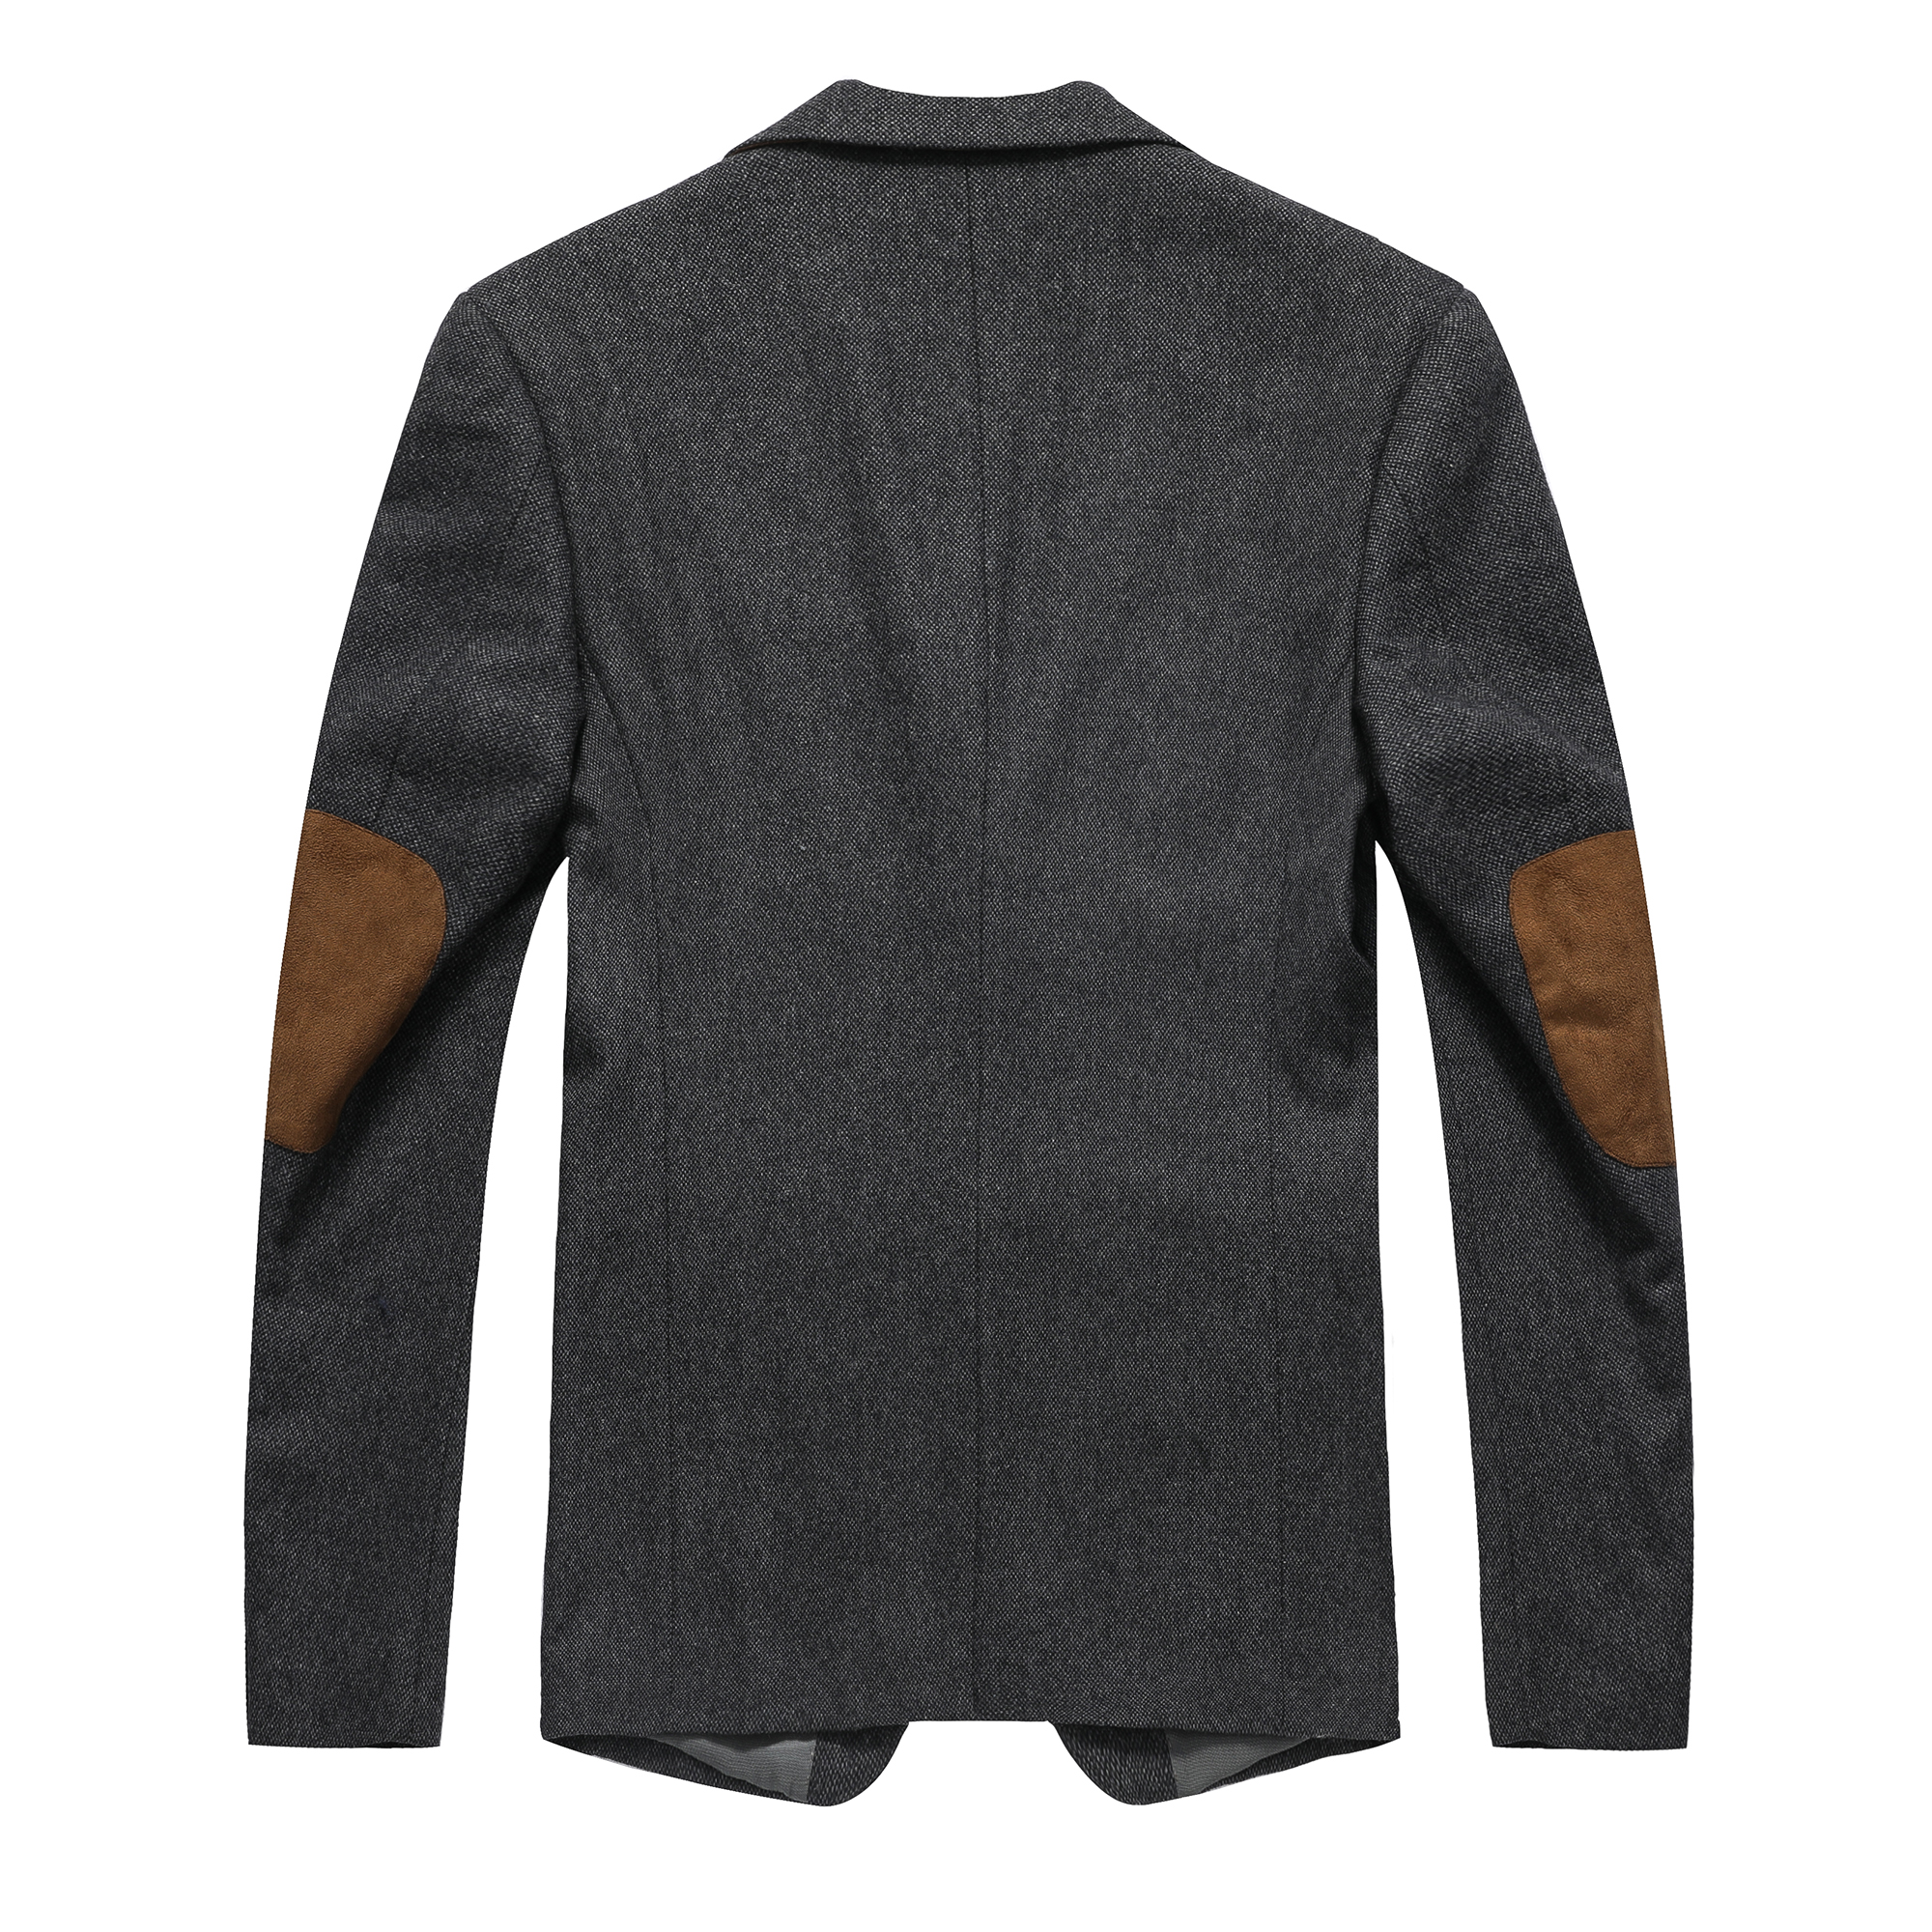 Men's wool mixed elbow patch notch lapel suit blazer